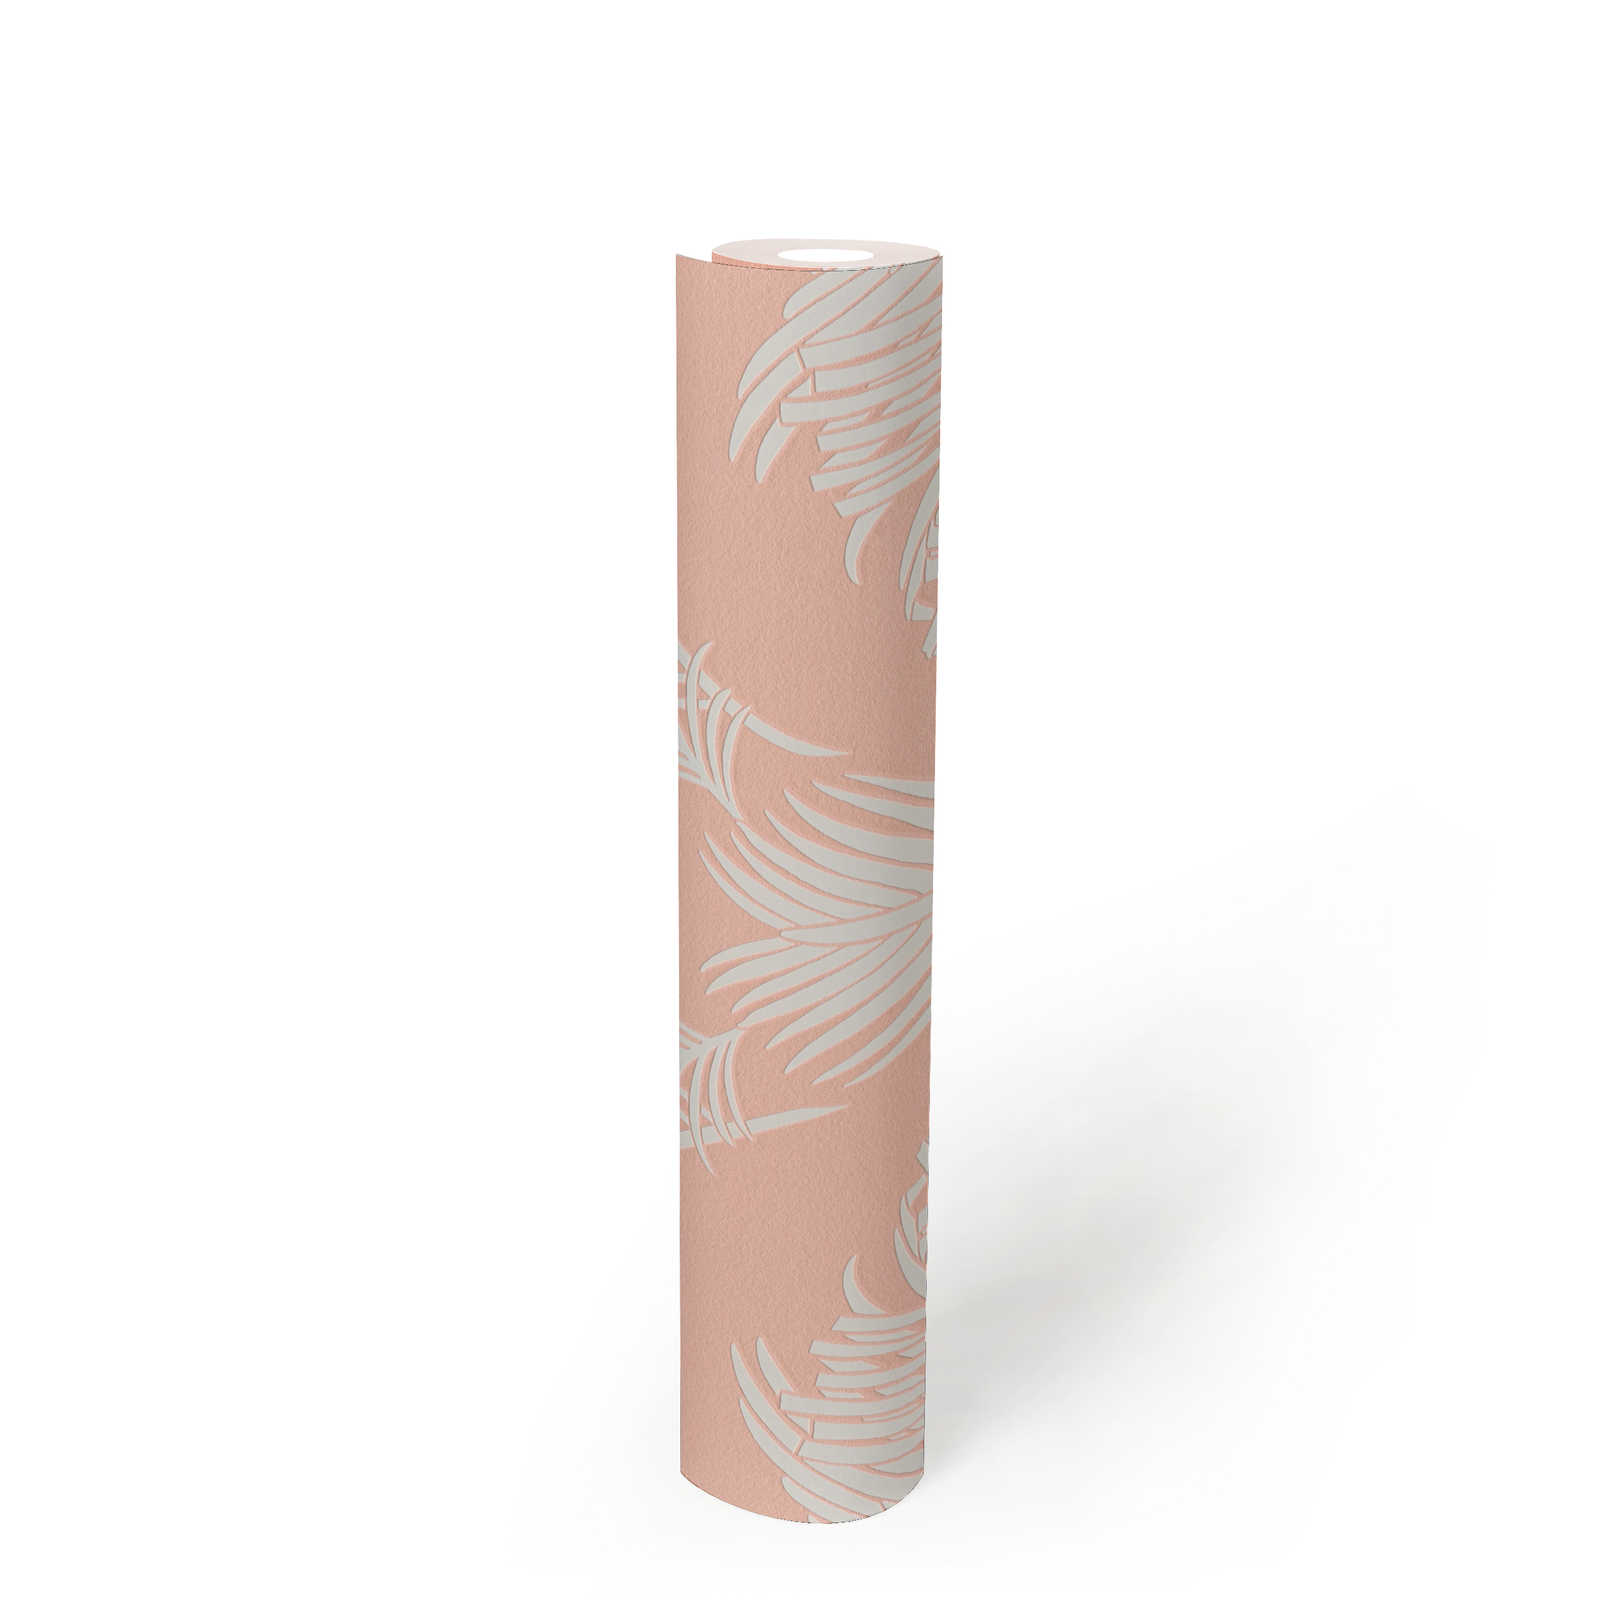             Roze behang met palmbladmotief & structuur reliëf - roze, wit
        